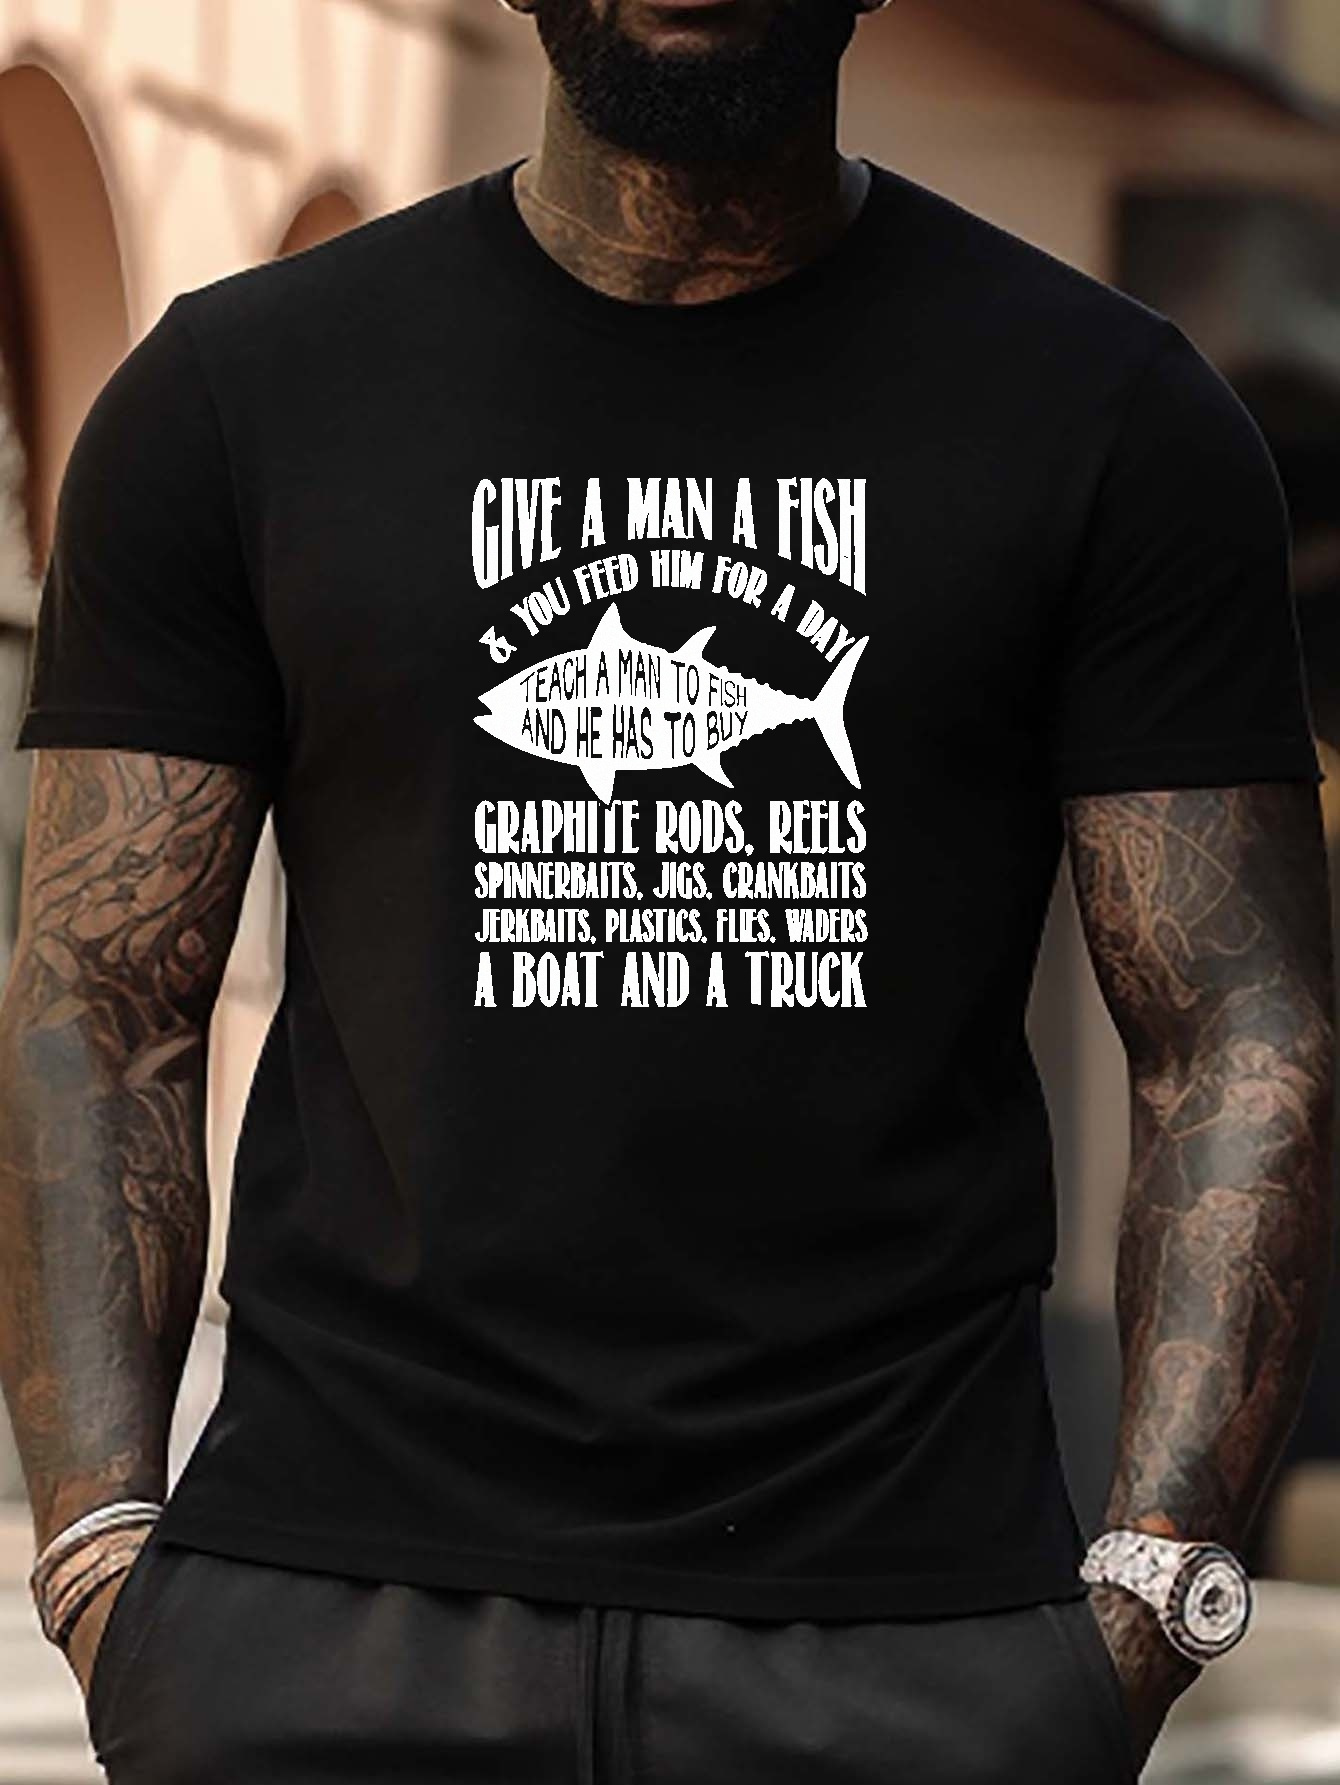 Men's Funny Bass Fishing T Shirt Fishing Shirts Bass Fisherman T-shirt  Fisherman Shirt Fishing Gift Idea Tee -  Canada